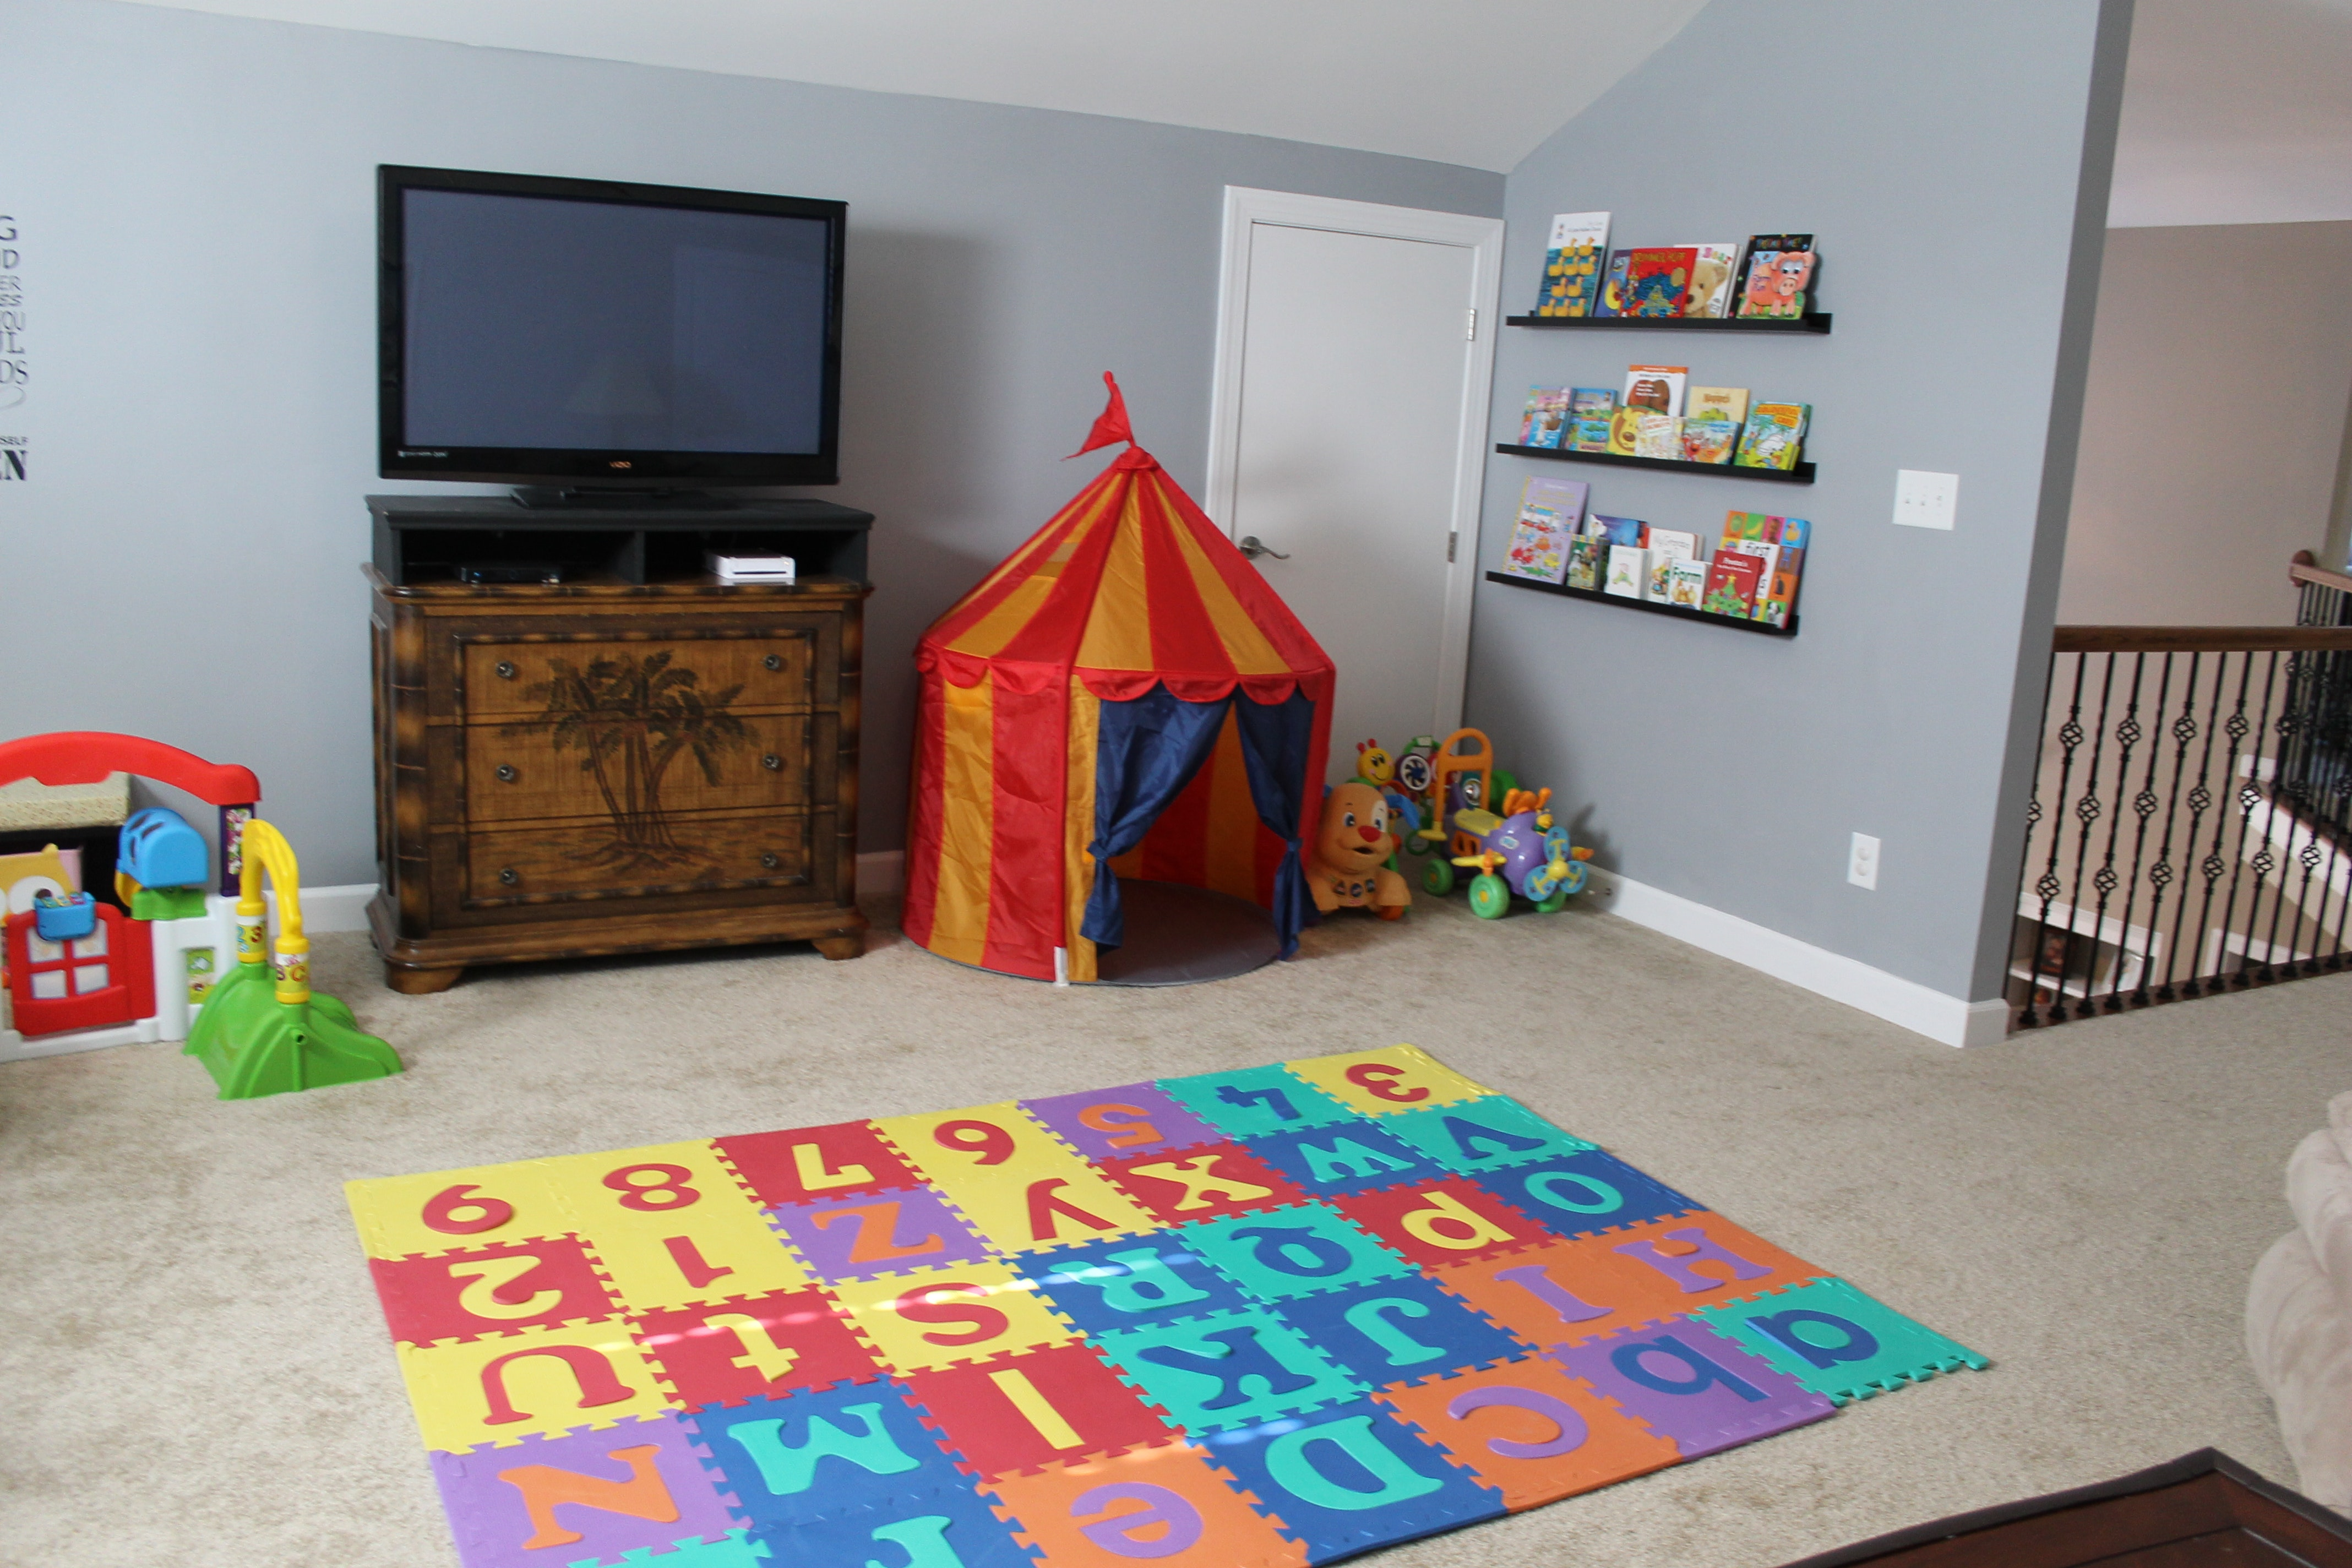 Мягкий пол для детей: теплый пол пазл для детских комнат, напольное покрытие под дерево, фото и видео